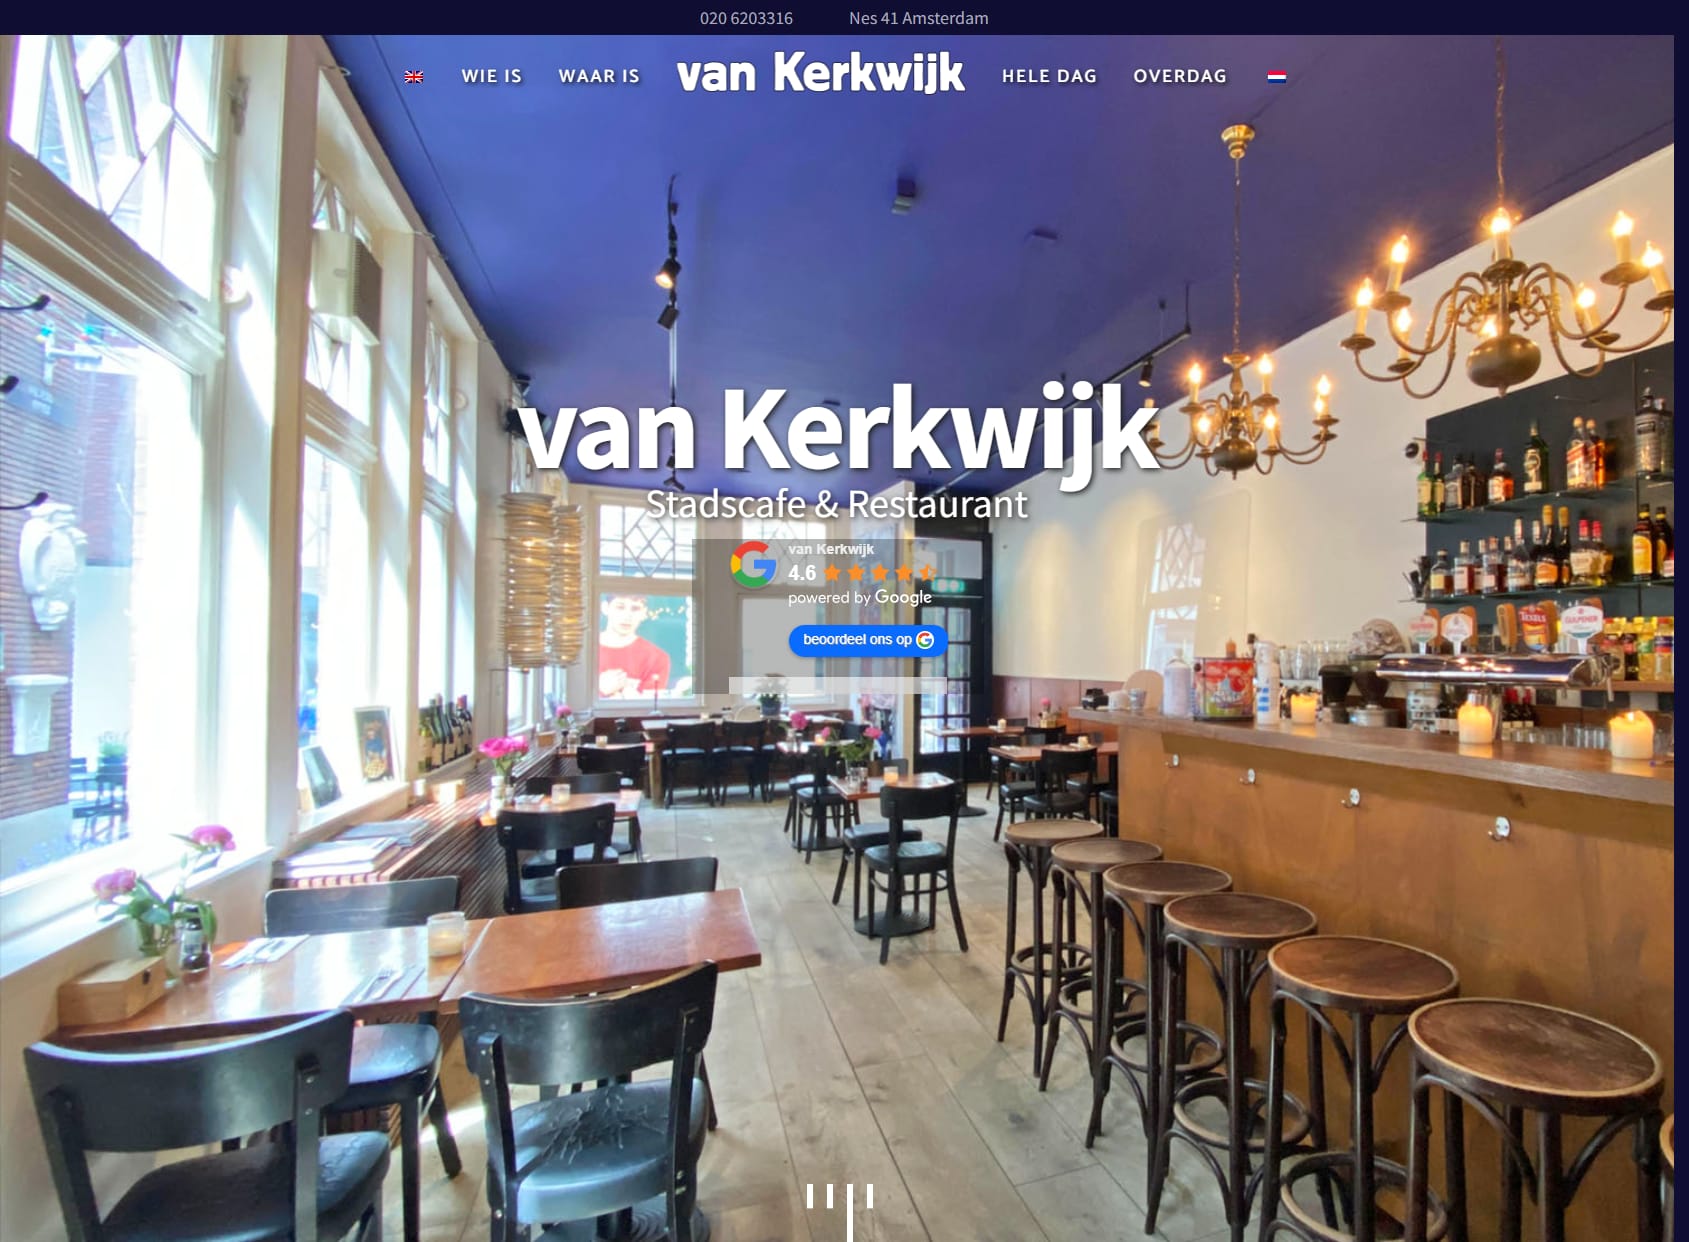 Café restaurant van Kerkwijk